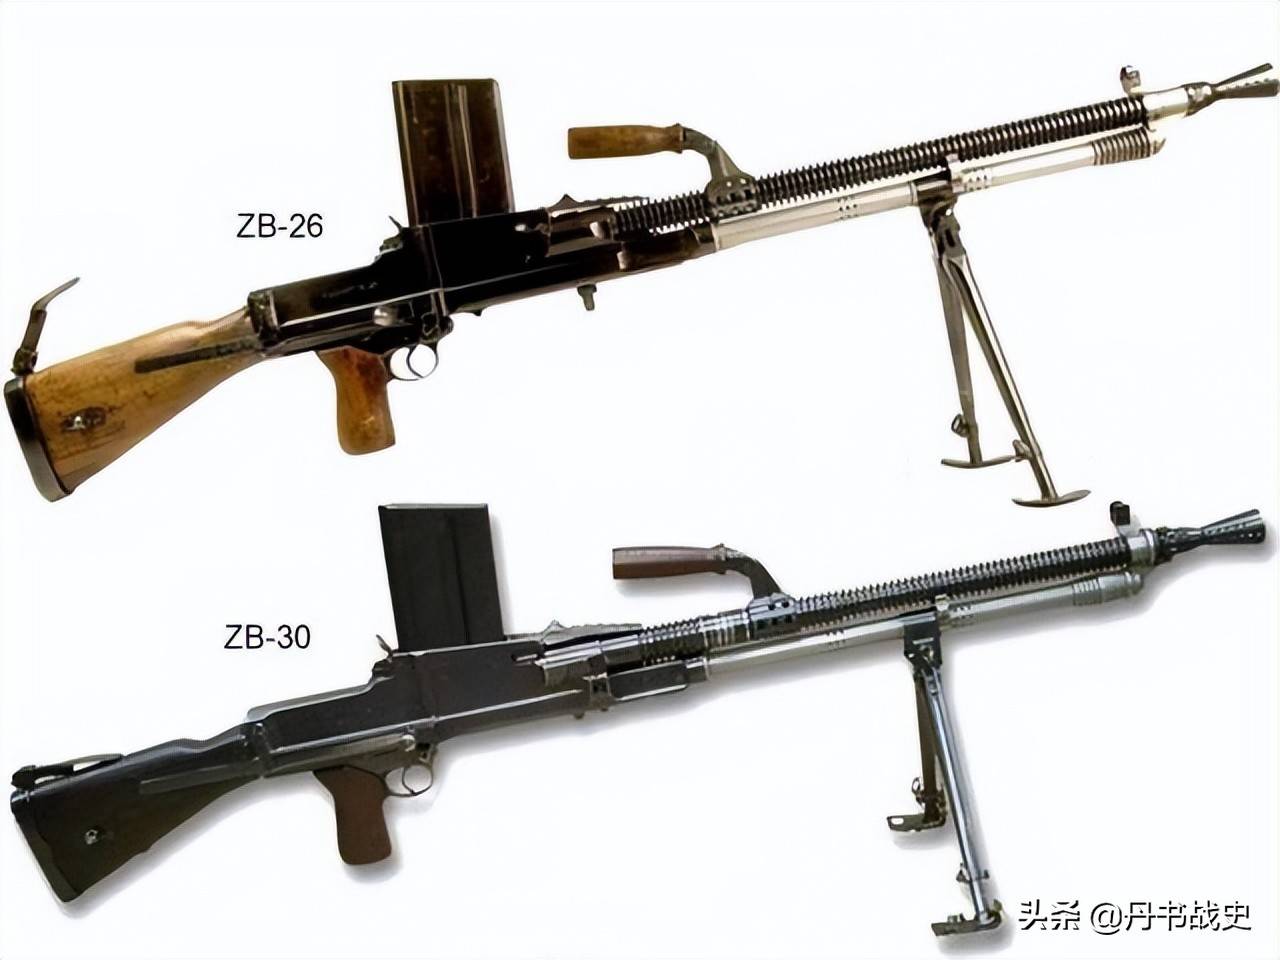 两款机枪相比之下,zb30比zb26长了1厘米多,为1180毫米,重量增加了20多